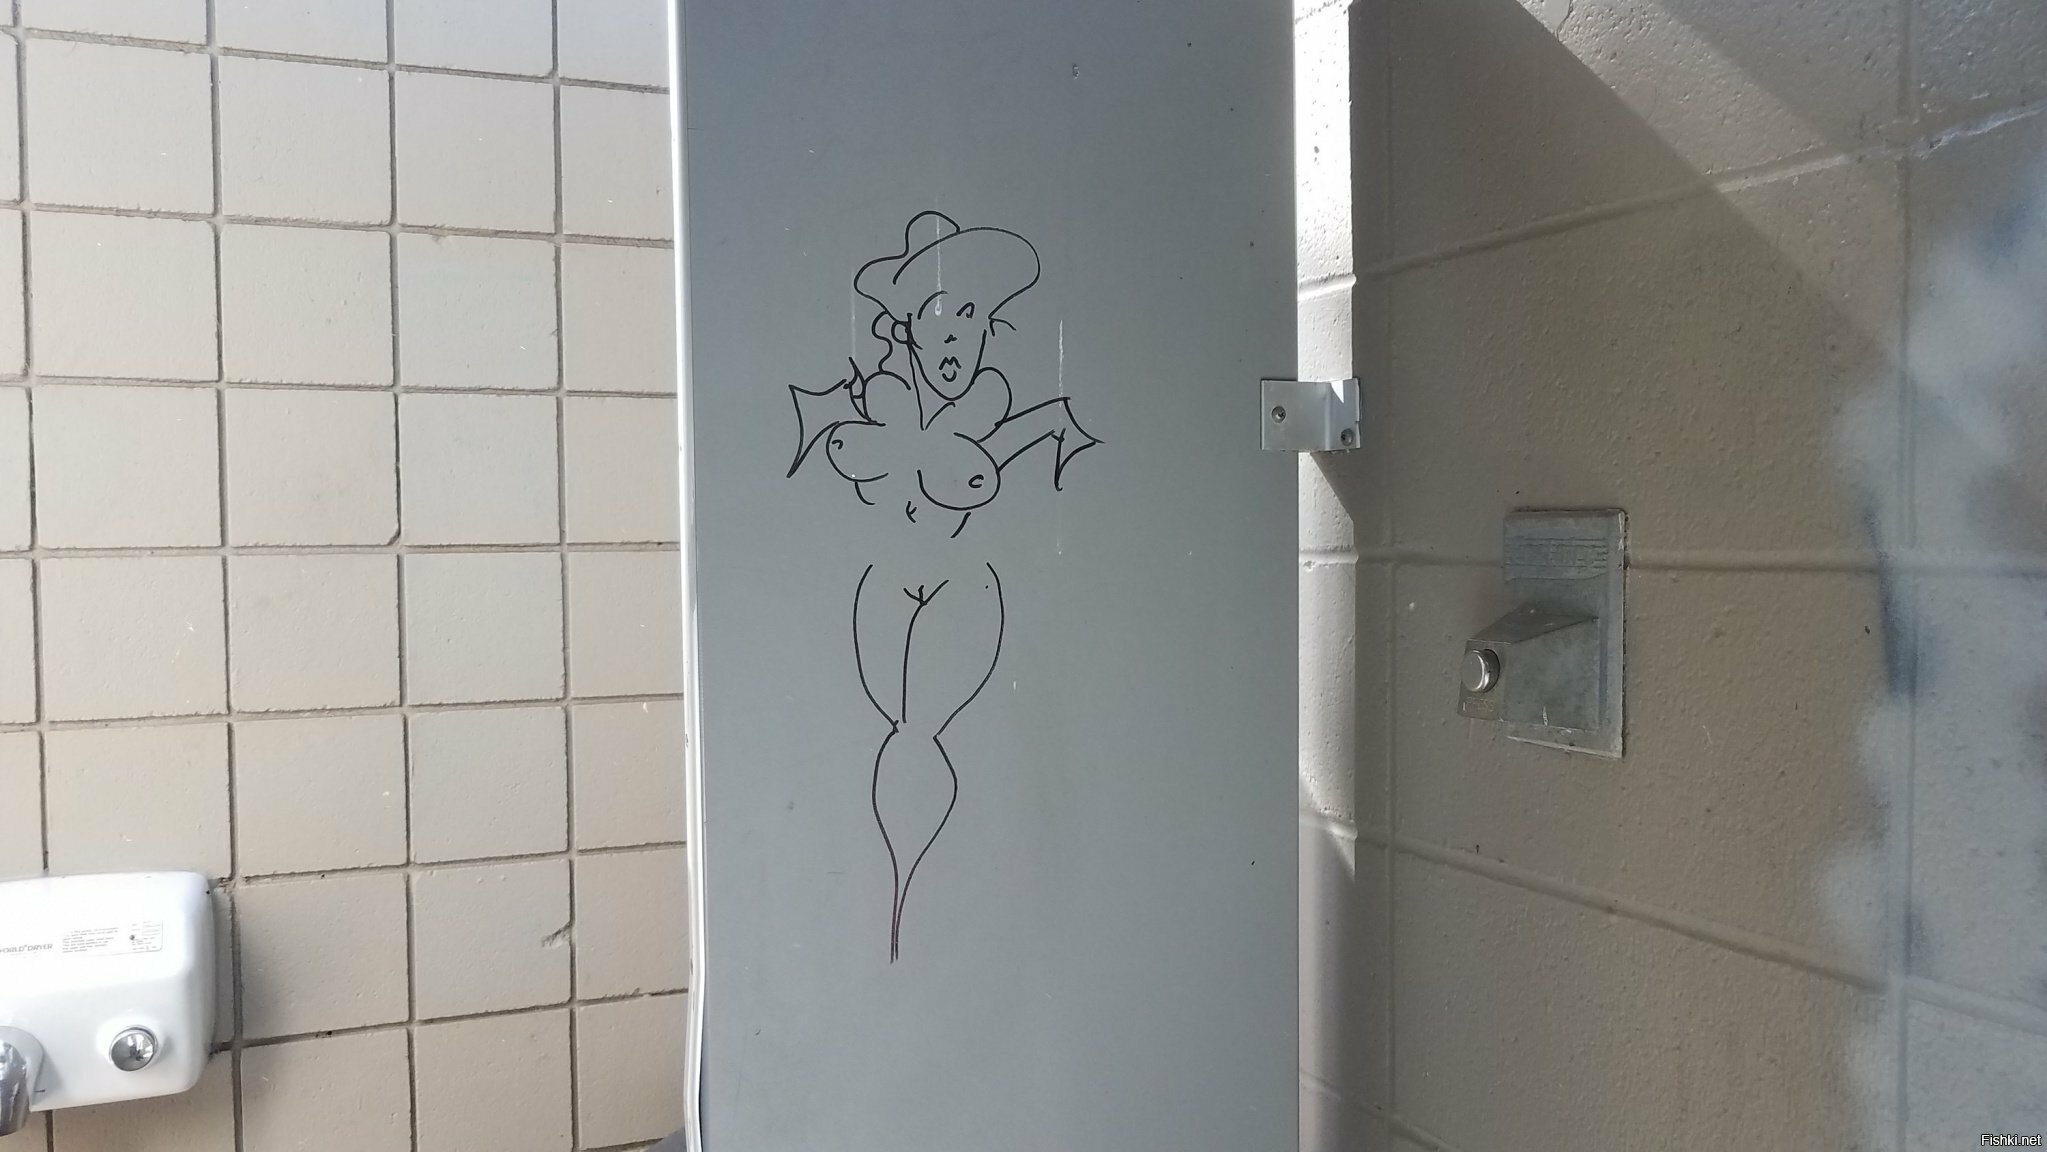 народное творчество в общественном туалете